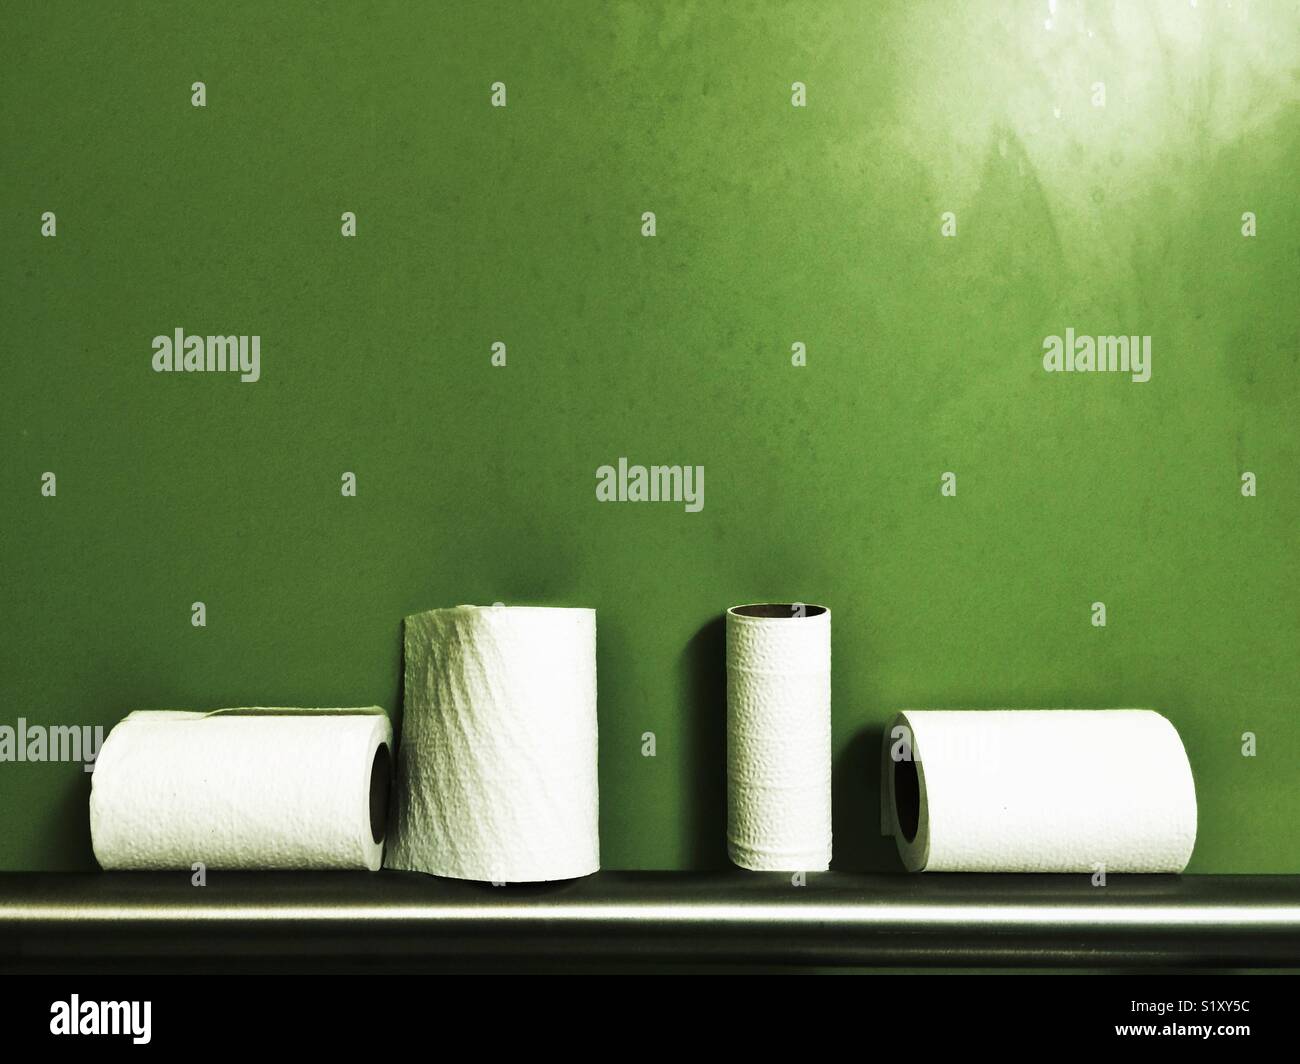 Halb fertig Toilettenpapierrollen auf Metall Geländer gegen grüne Wand Stockfoto